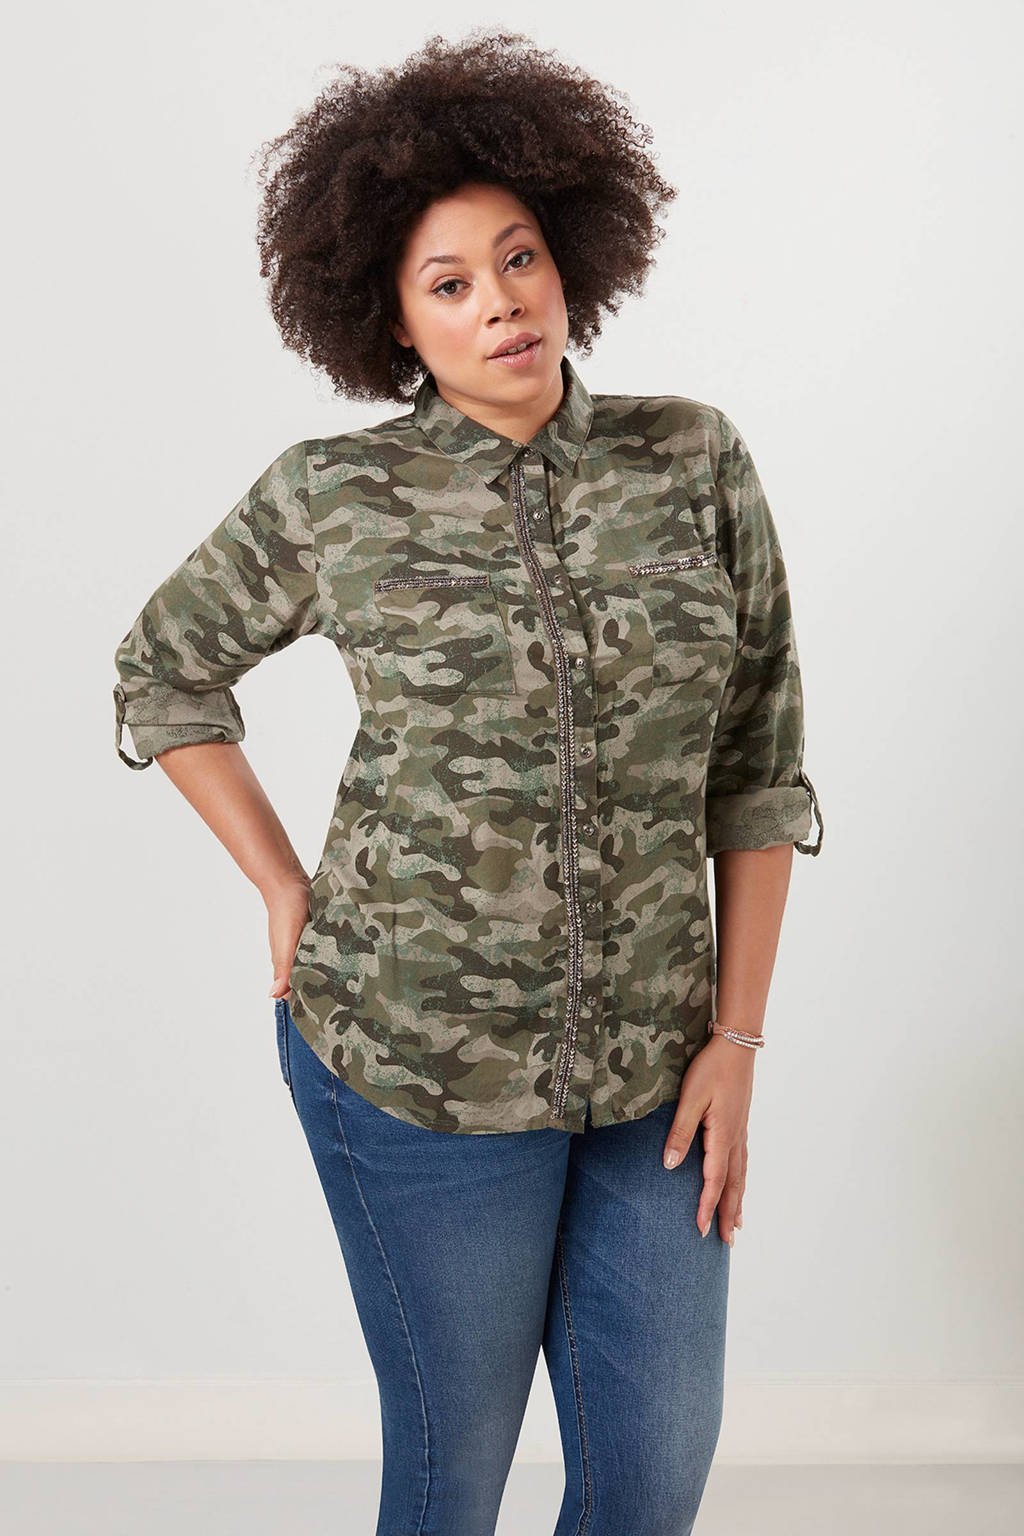 Goed doen barsten weg te verspillen MS Mode camouflage blouse kopen? | Morgen in huis | wehkamp